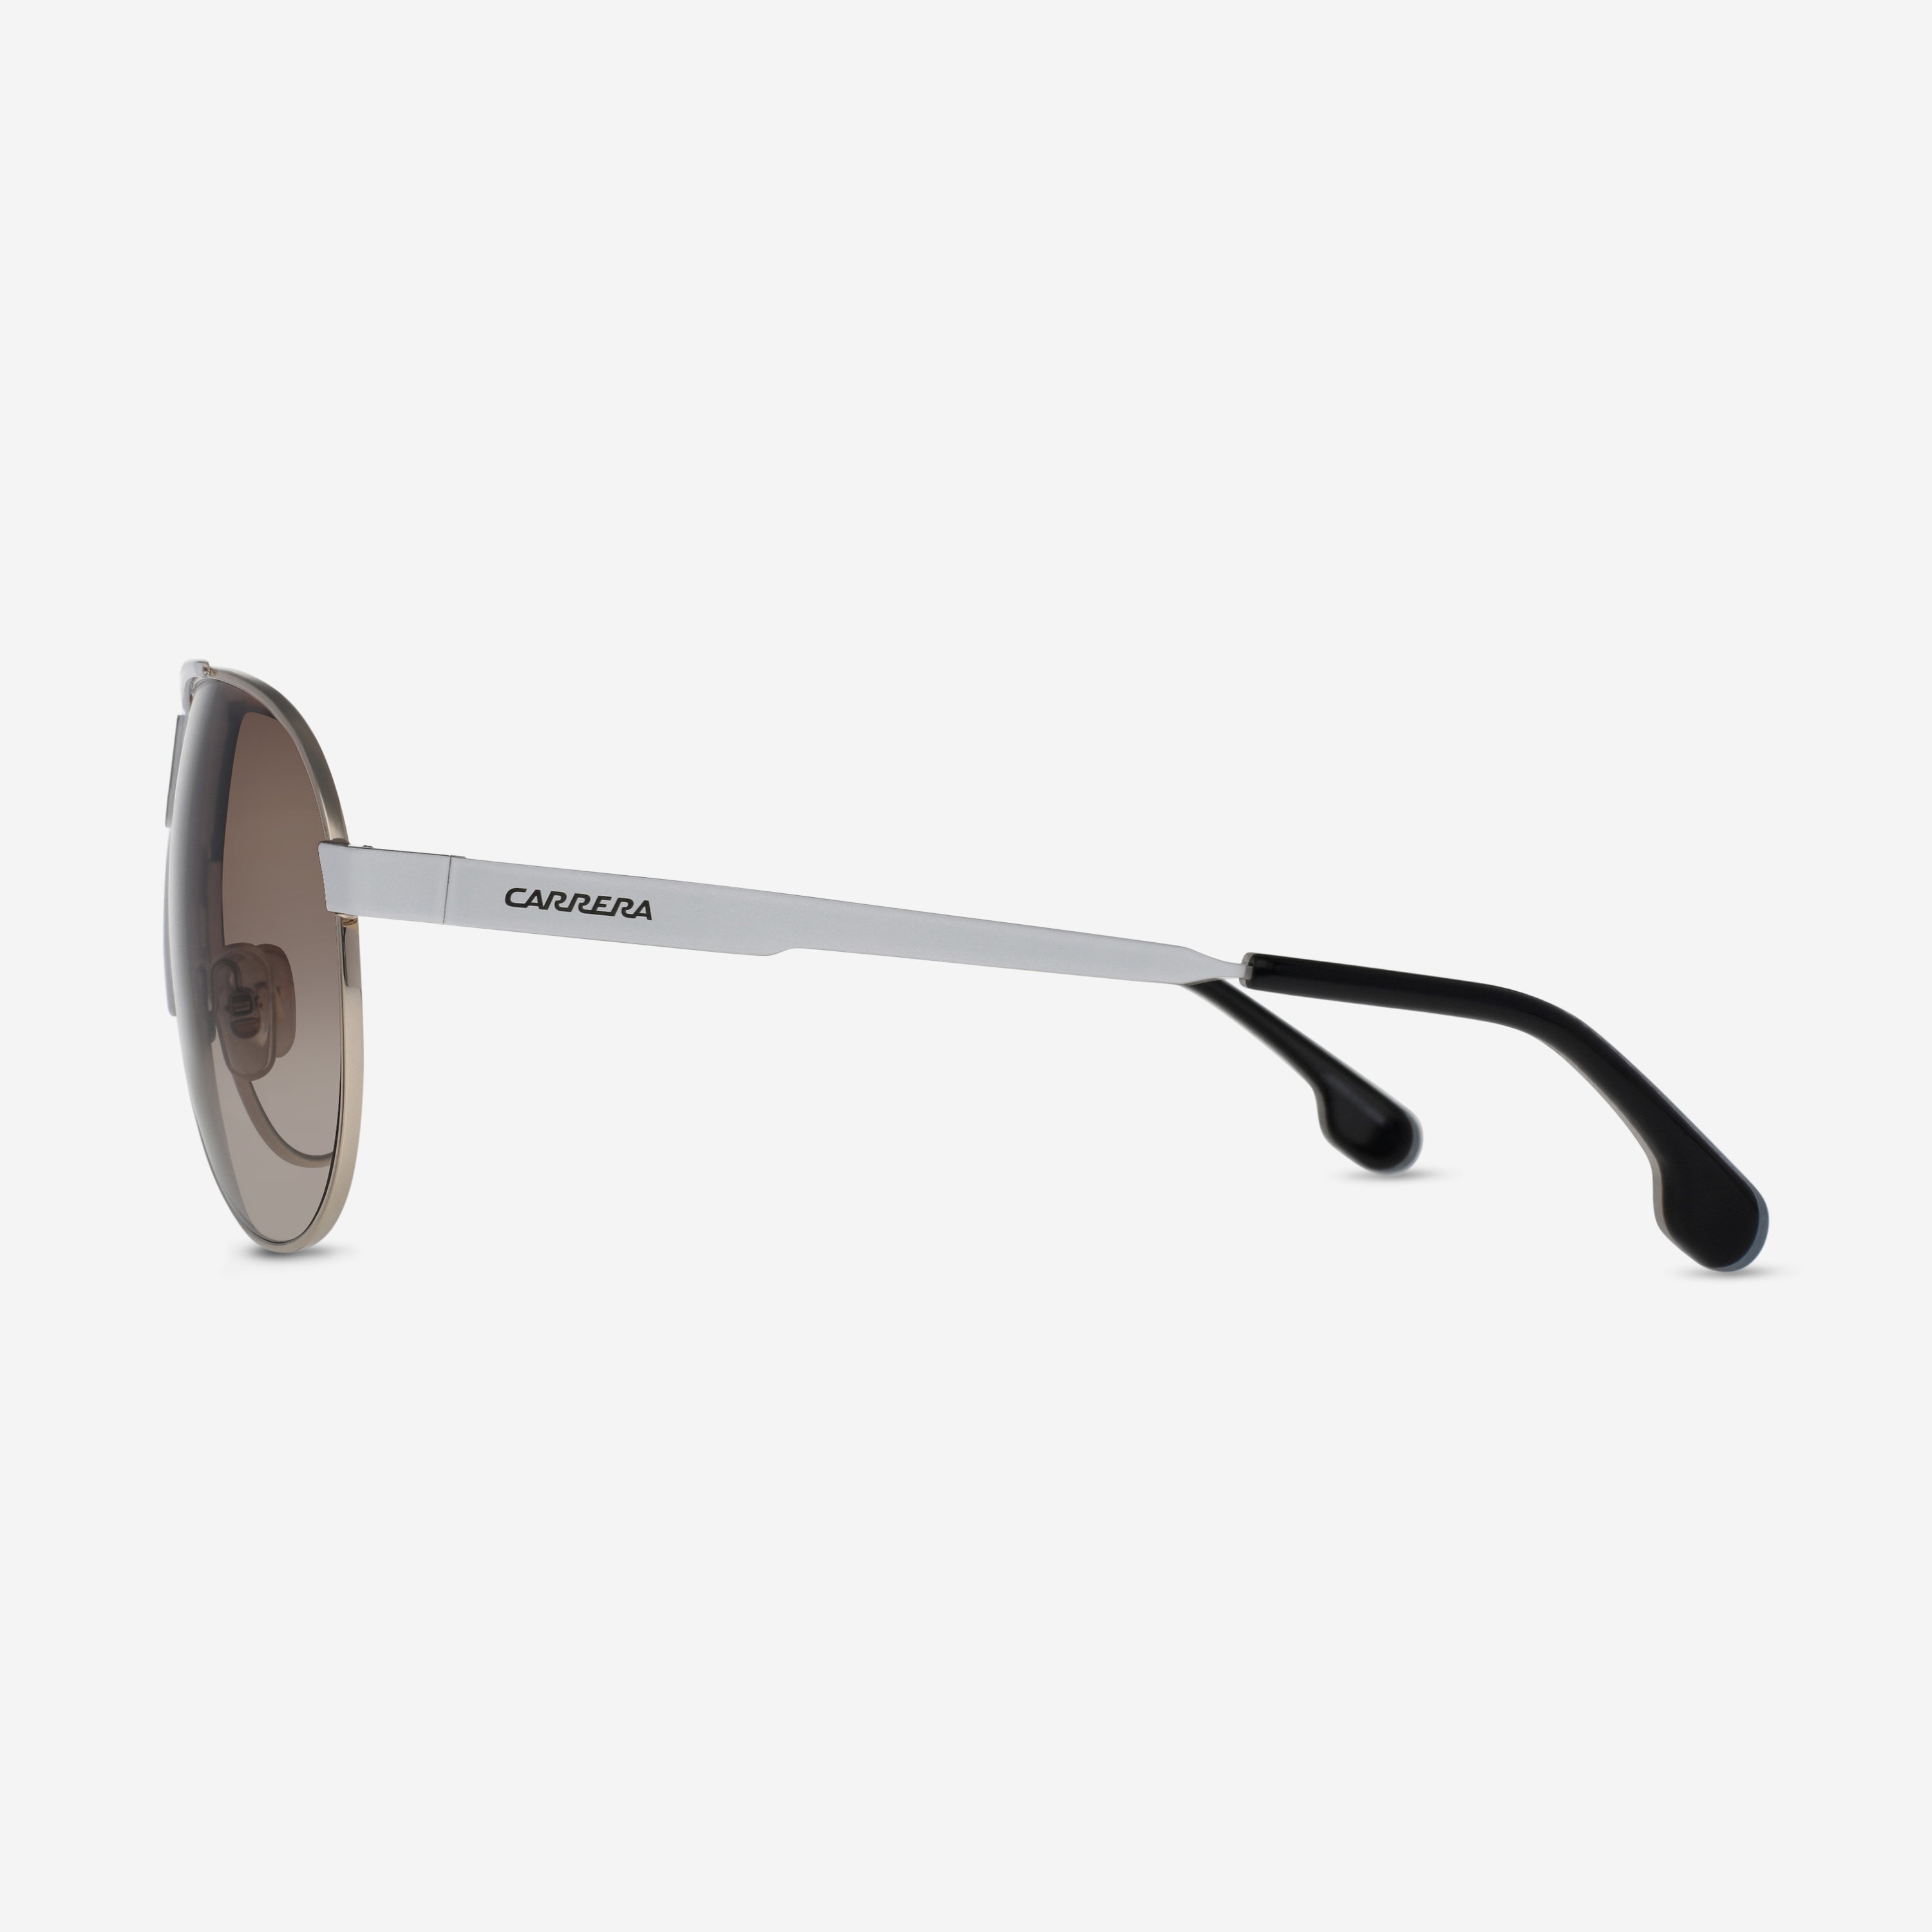 Carrera White Frame Gradient Lens Aviator Men's Sunglasses 1005/S